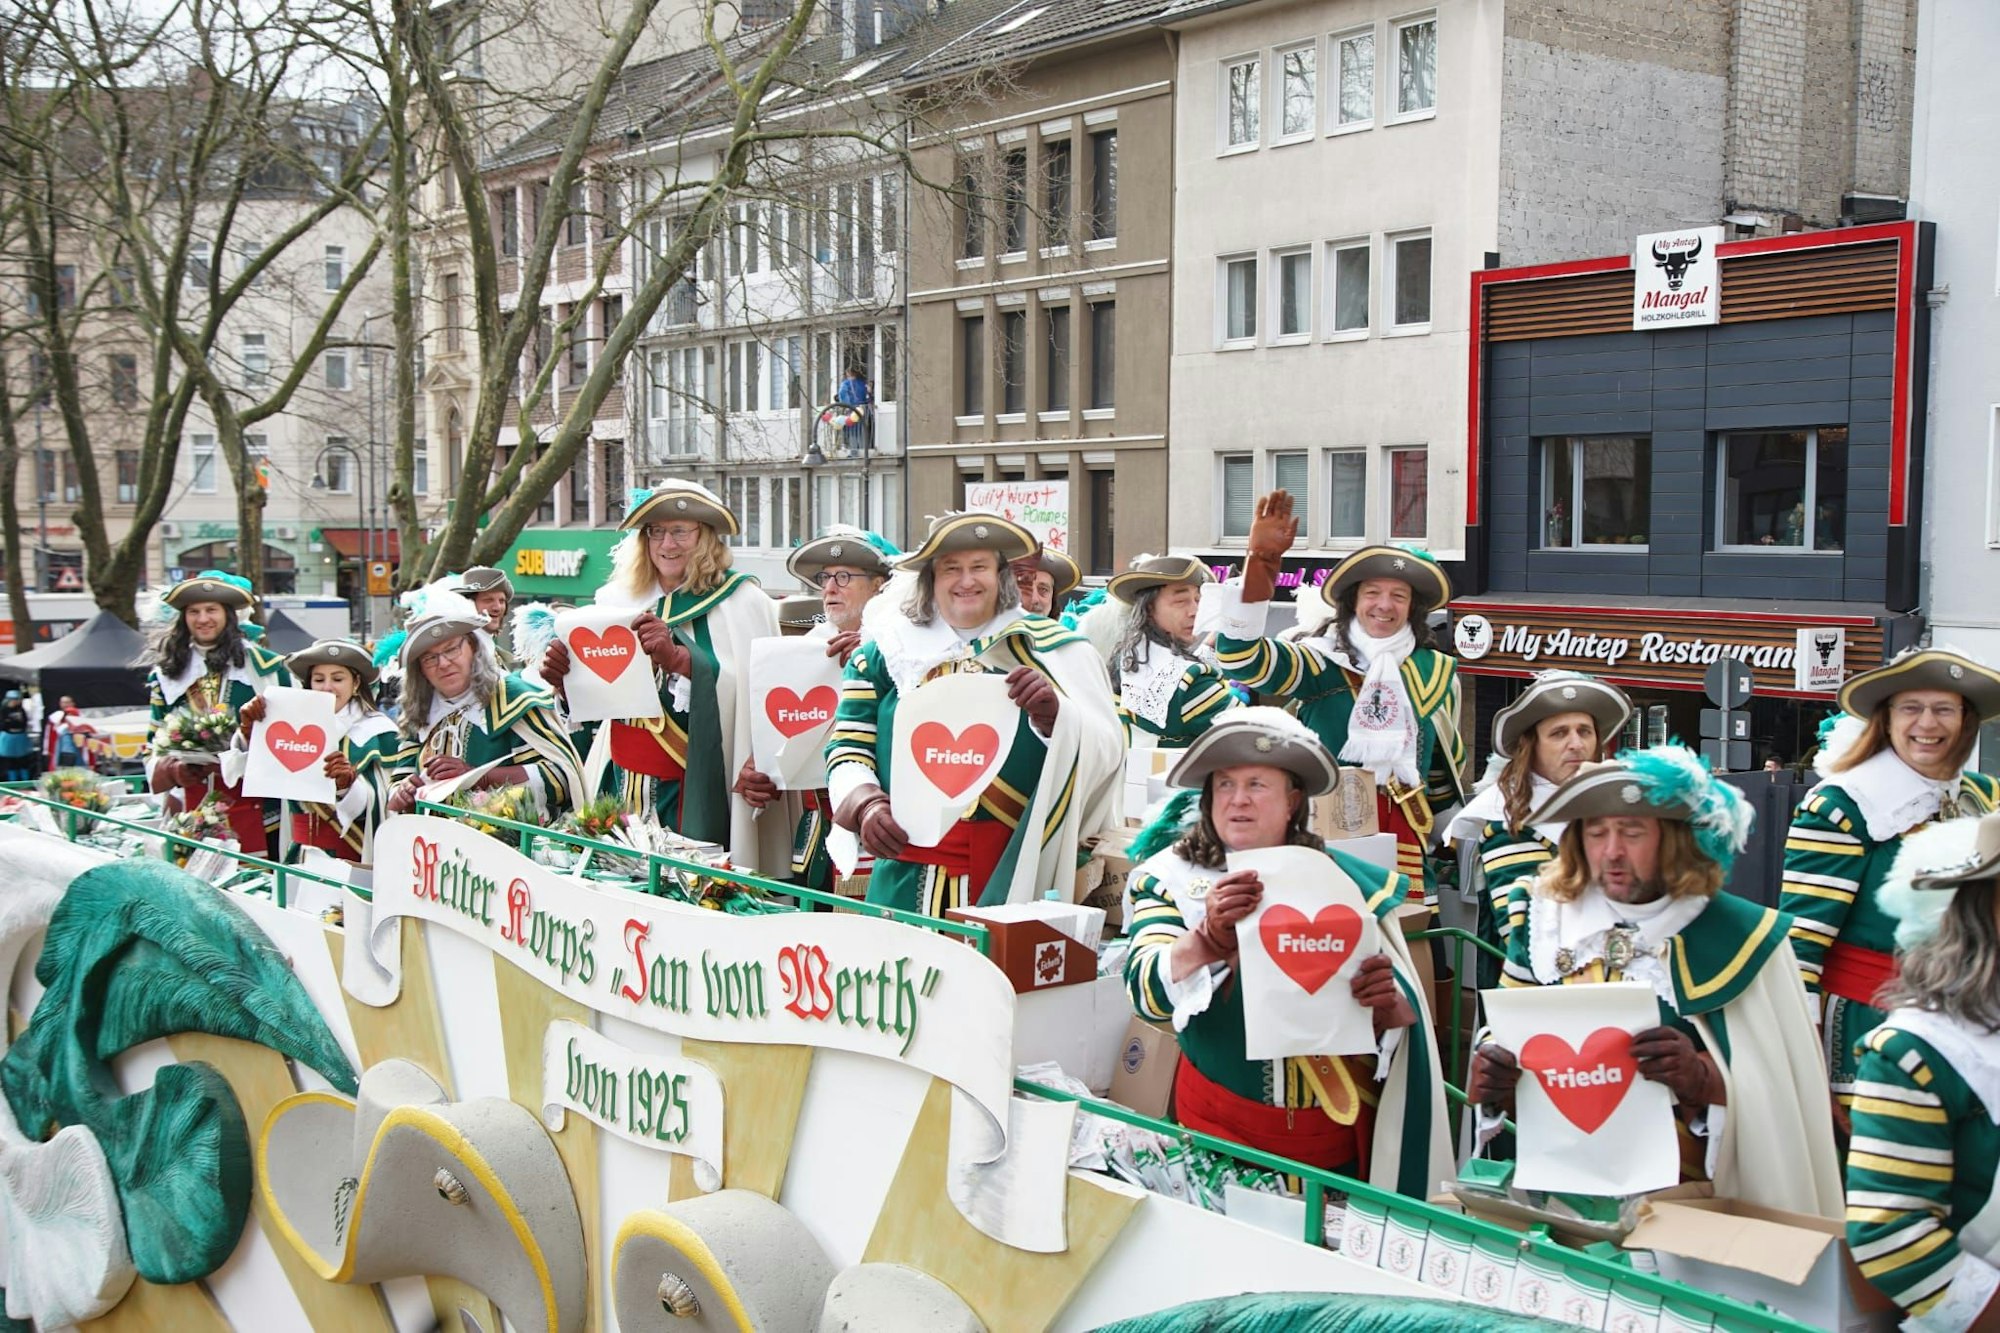 Verkleidete Männer stehen auf dem Karnevalswagen mit dem Schriftzug „Reiter Koprs Jan von Werth“ und halten Herzen mit dem Namen Friede vor sich.